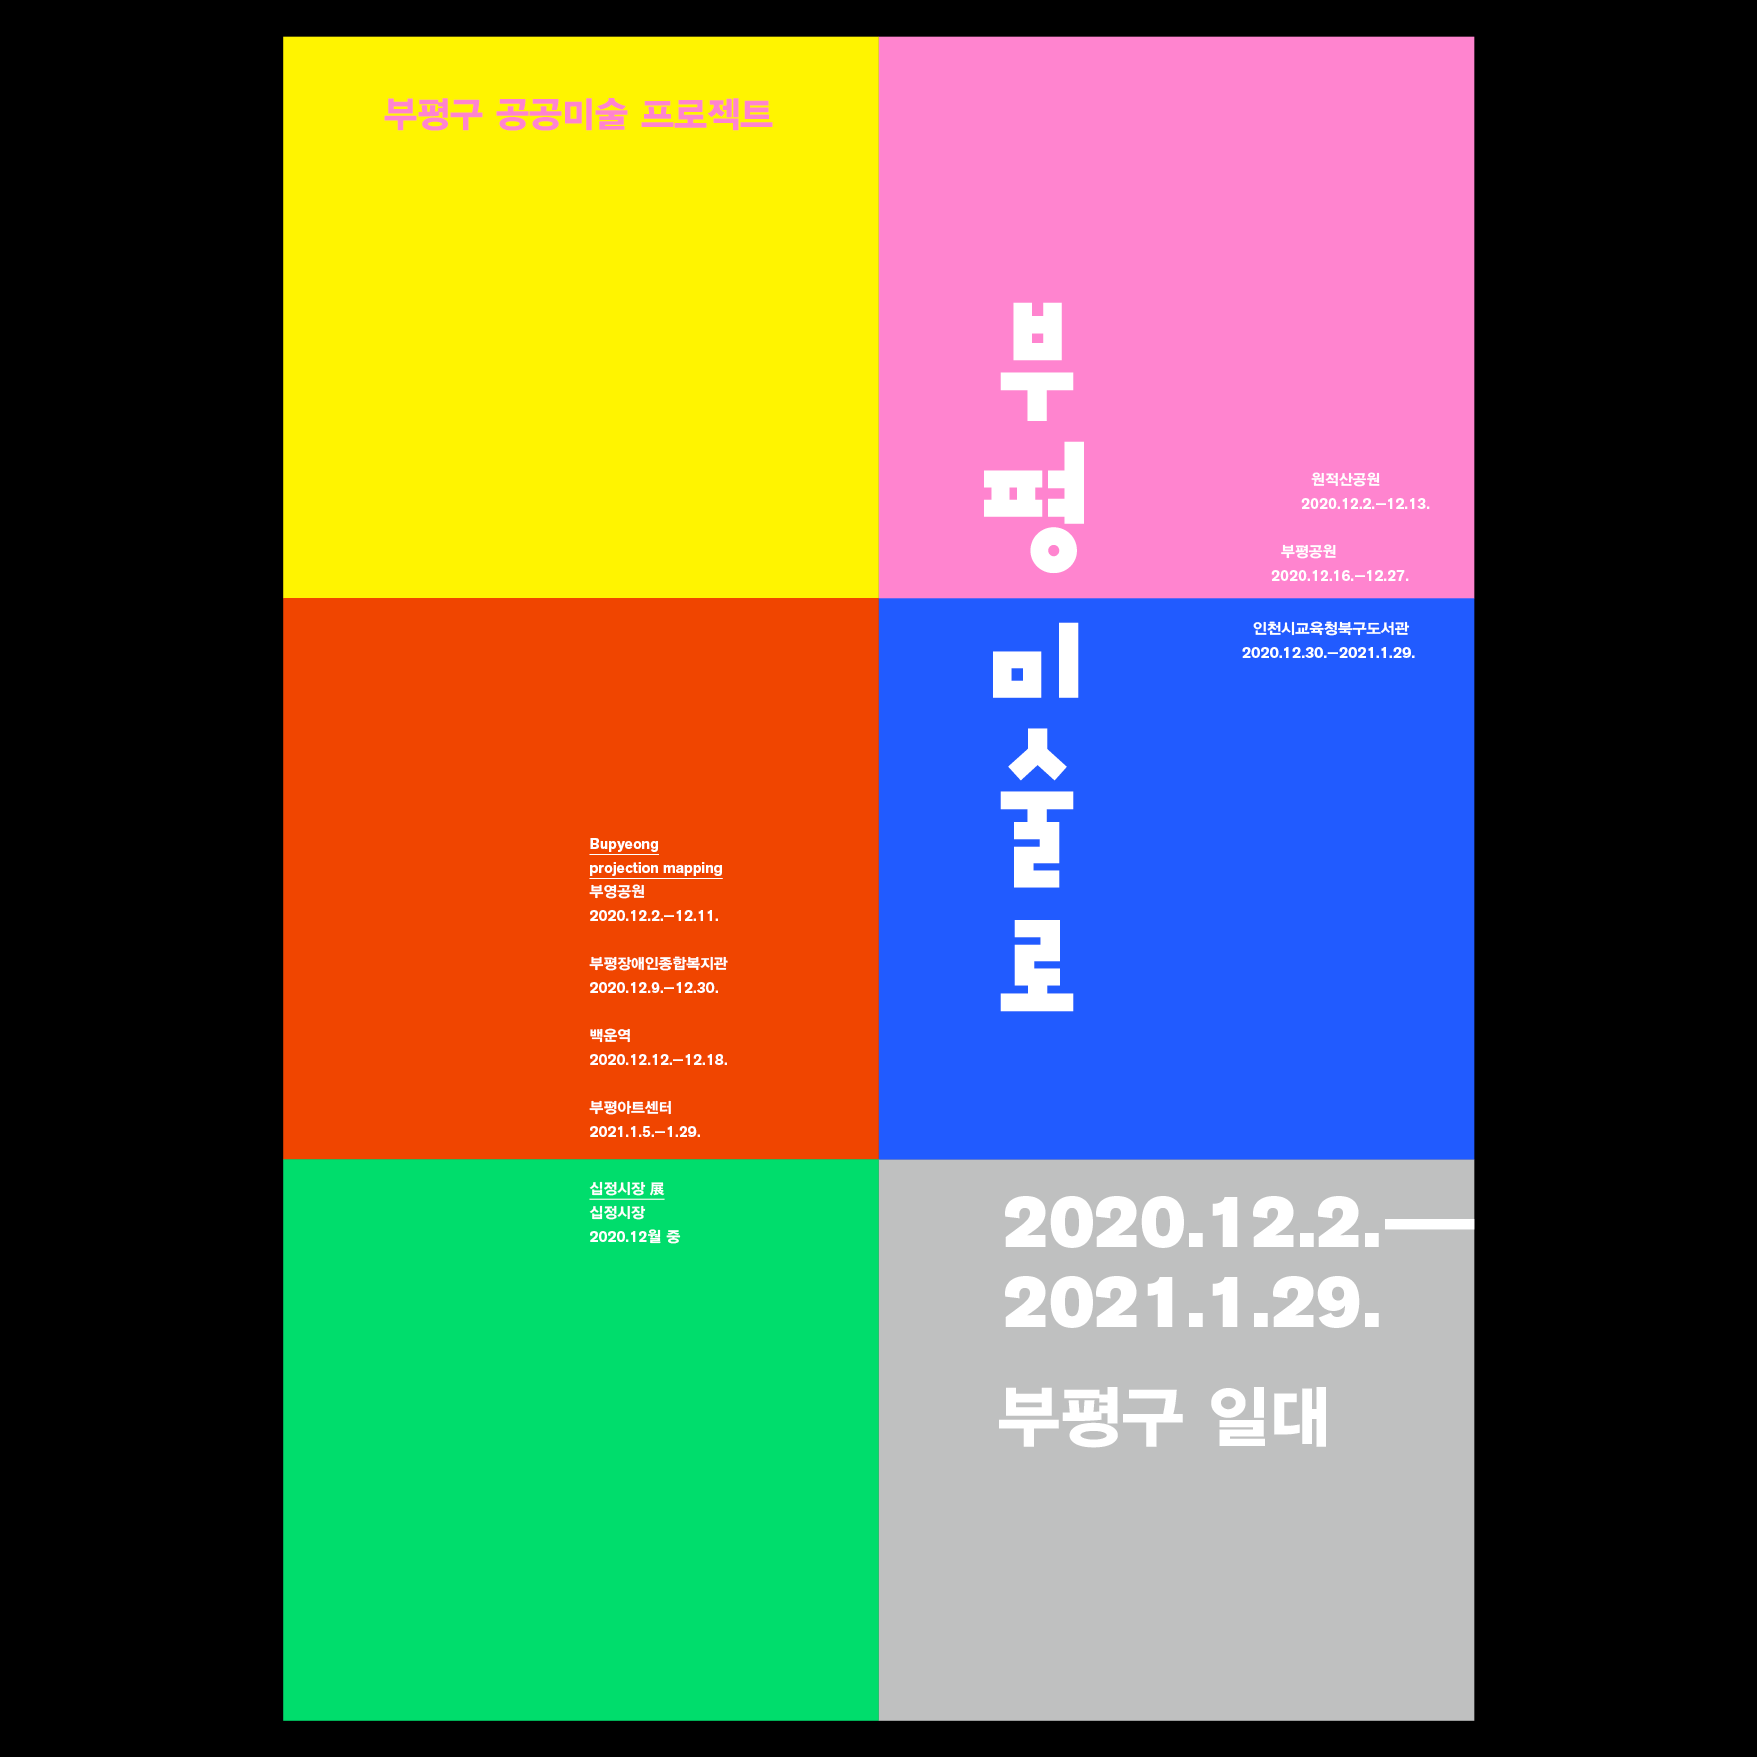 2020 부평구 공공미술프로젝트 '부평 미술로' 관련 포스터 - 자세한 내용은 본문참조